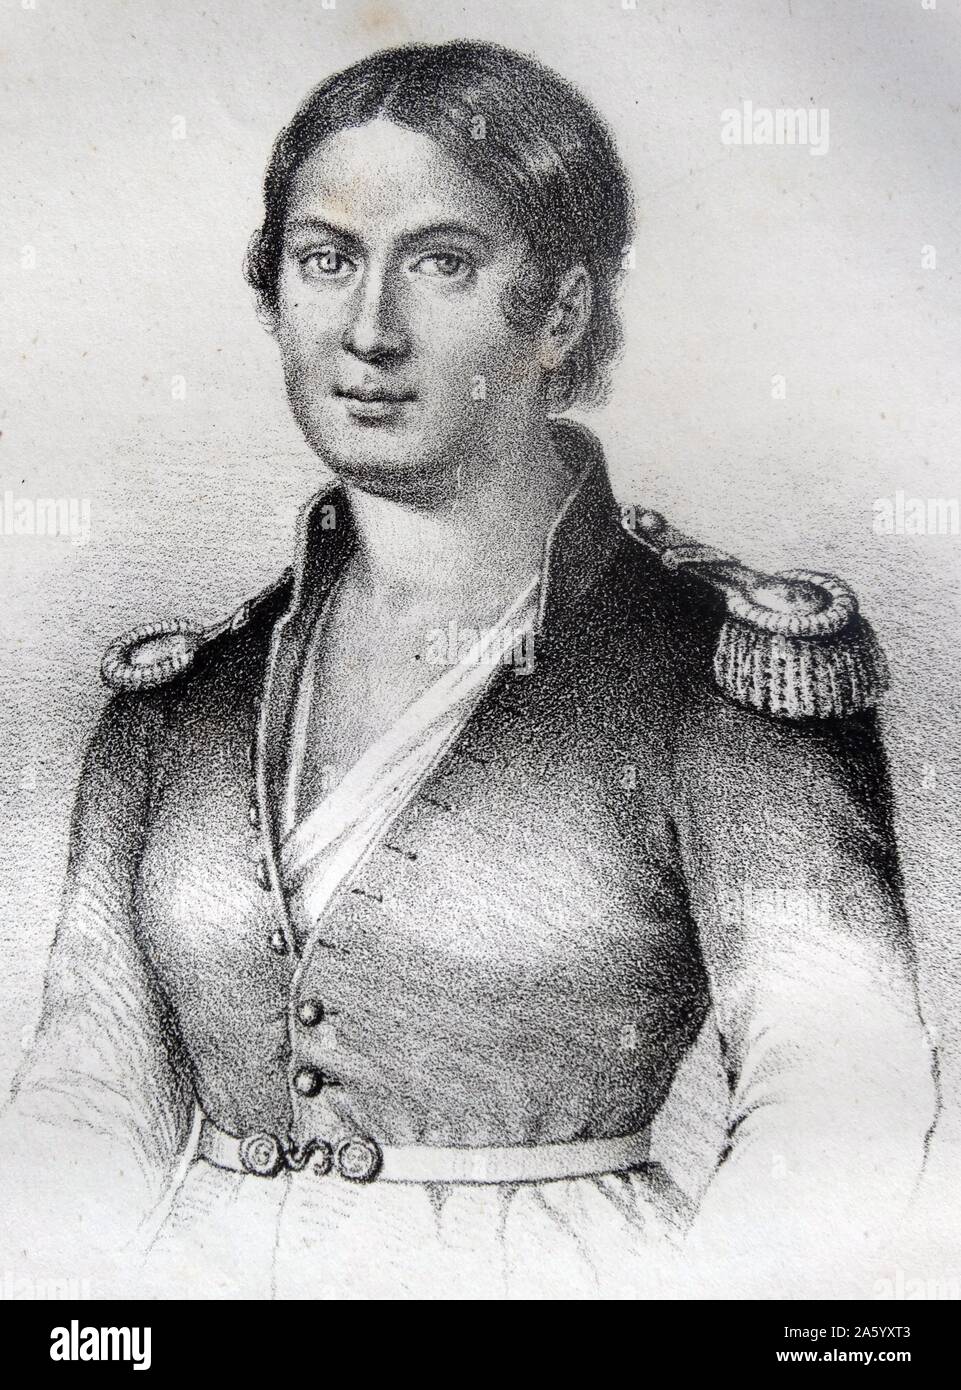 Porträt von Agustina de Aragón (1786-1857) spanische Heldin, die Spanien während des spanischen Unabhängigkeitskrieges zunächst verteidigt als Zivilist und später als Berufsoffizier in der spanischen Armee. Vom Jahre 1814 Stockfoto